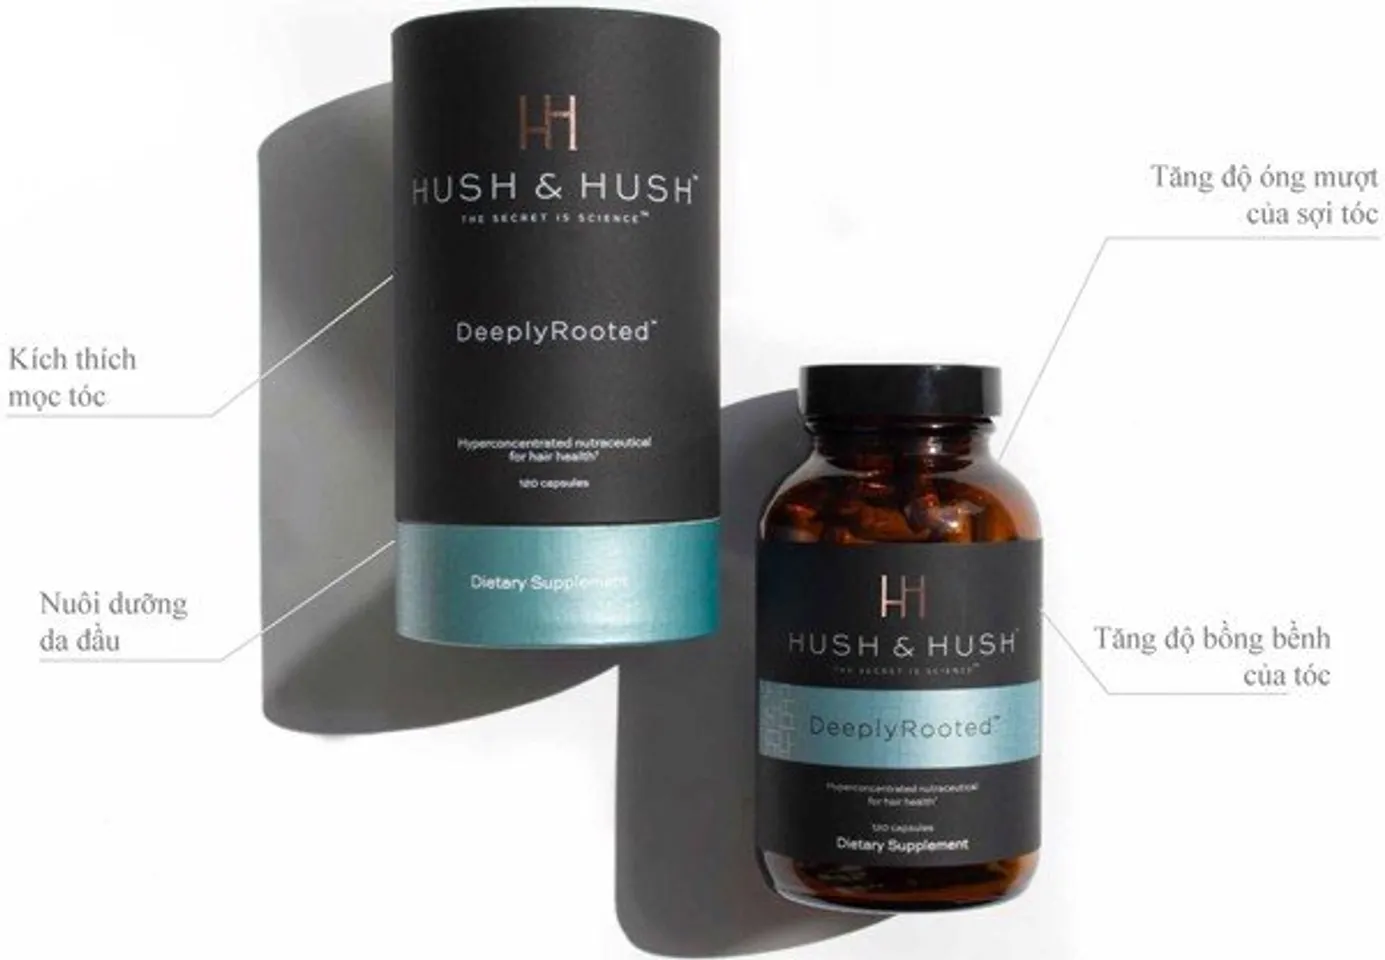 Viên uống Hush & Hush Deeply Rooted giúp tóc mọc dày, khỏe